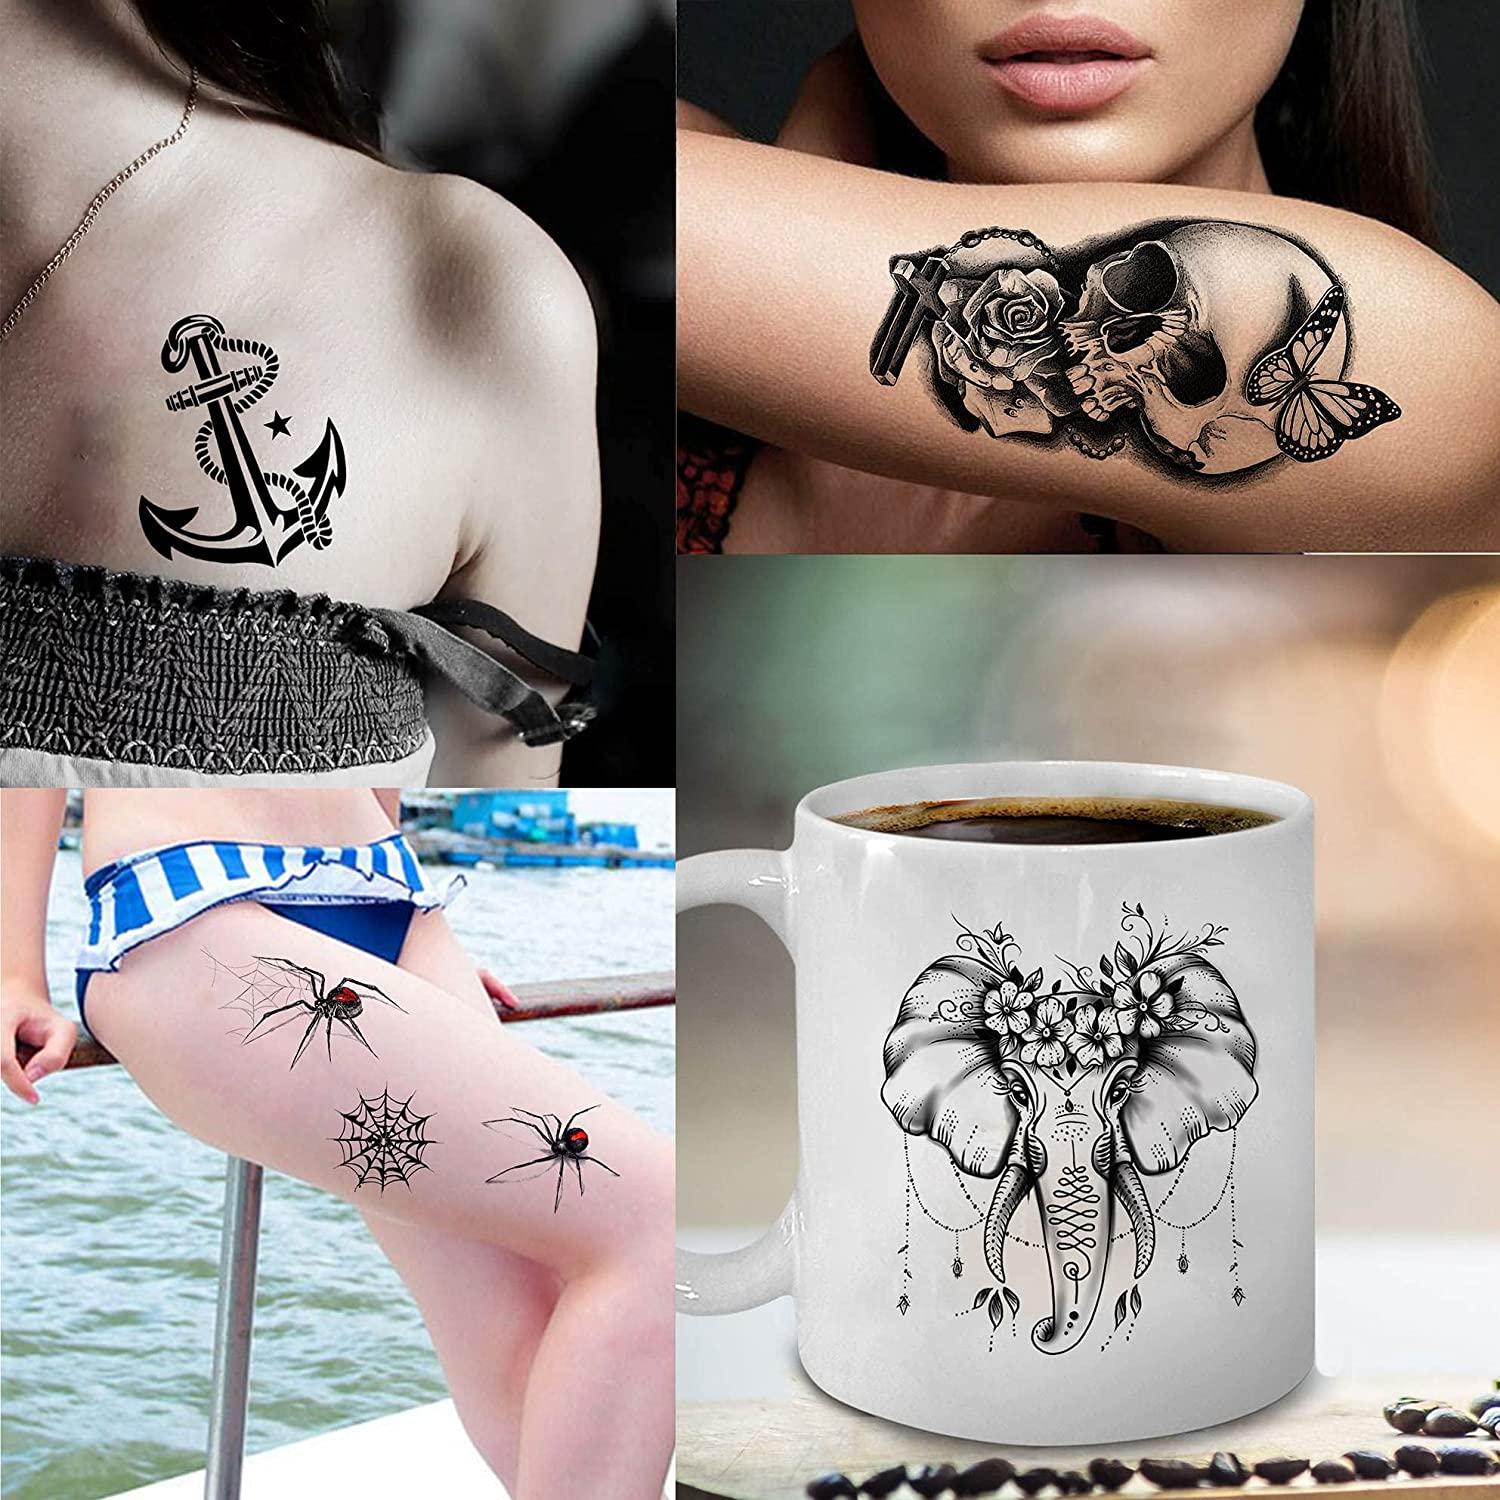 Small Butterfly Tattoo | Tat2o